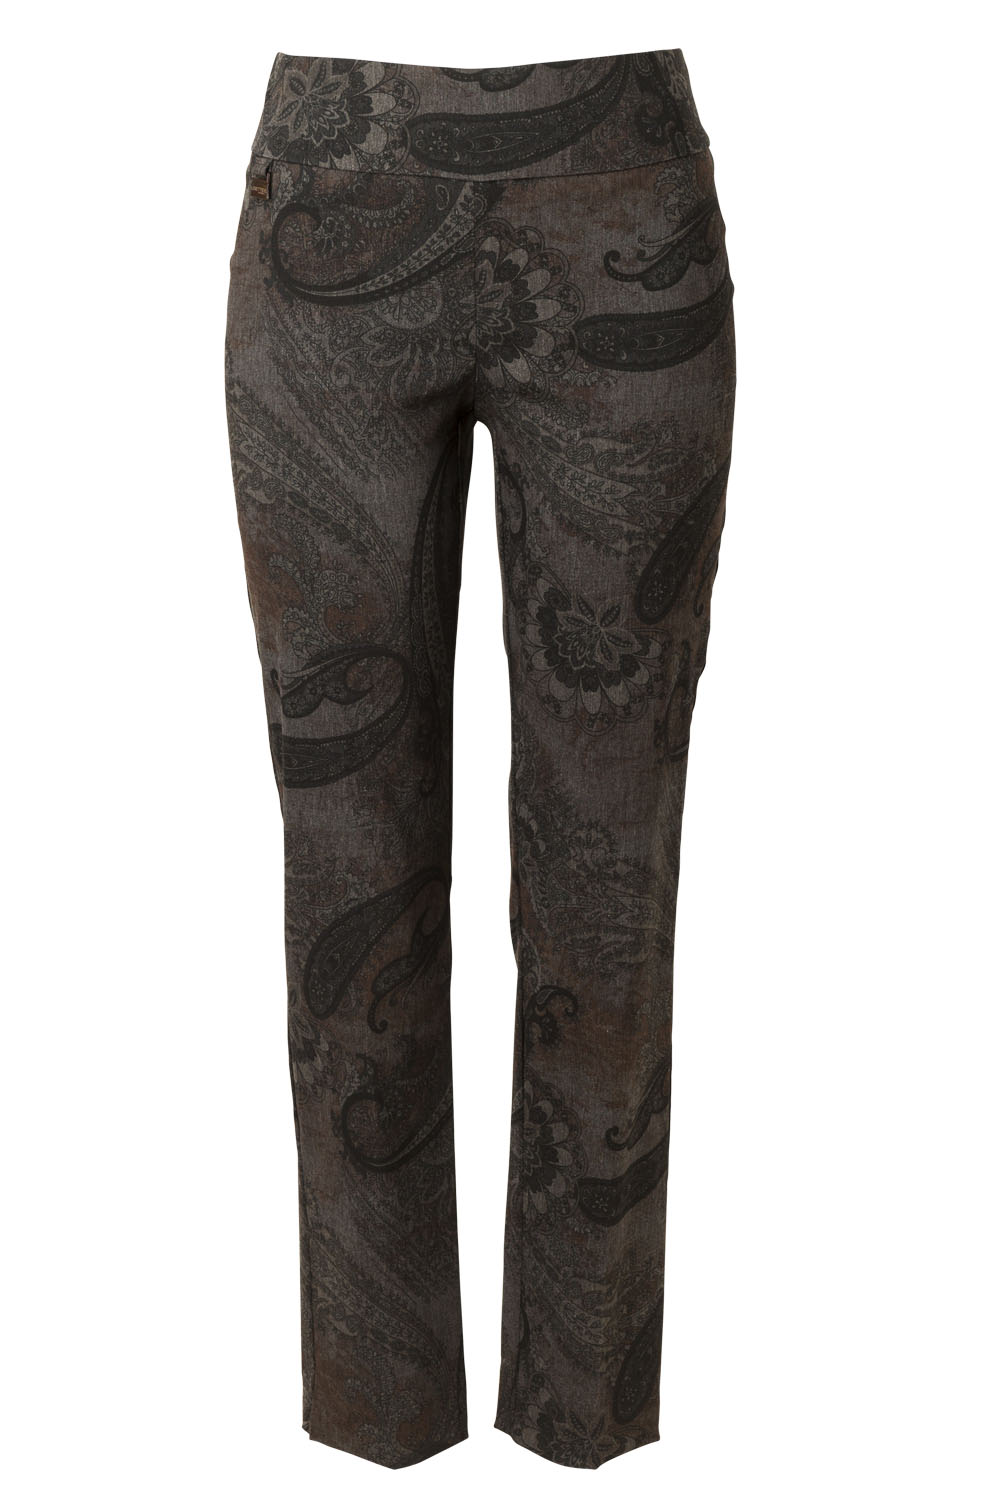 Pants, $259, by Lisette L.